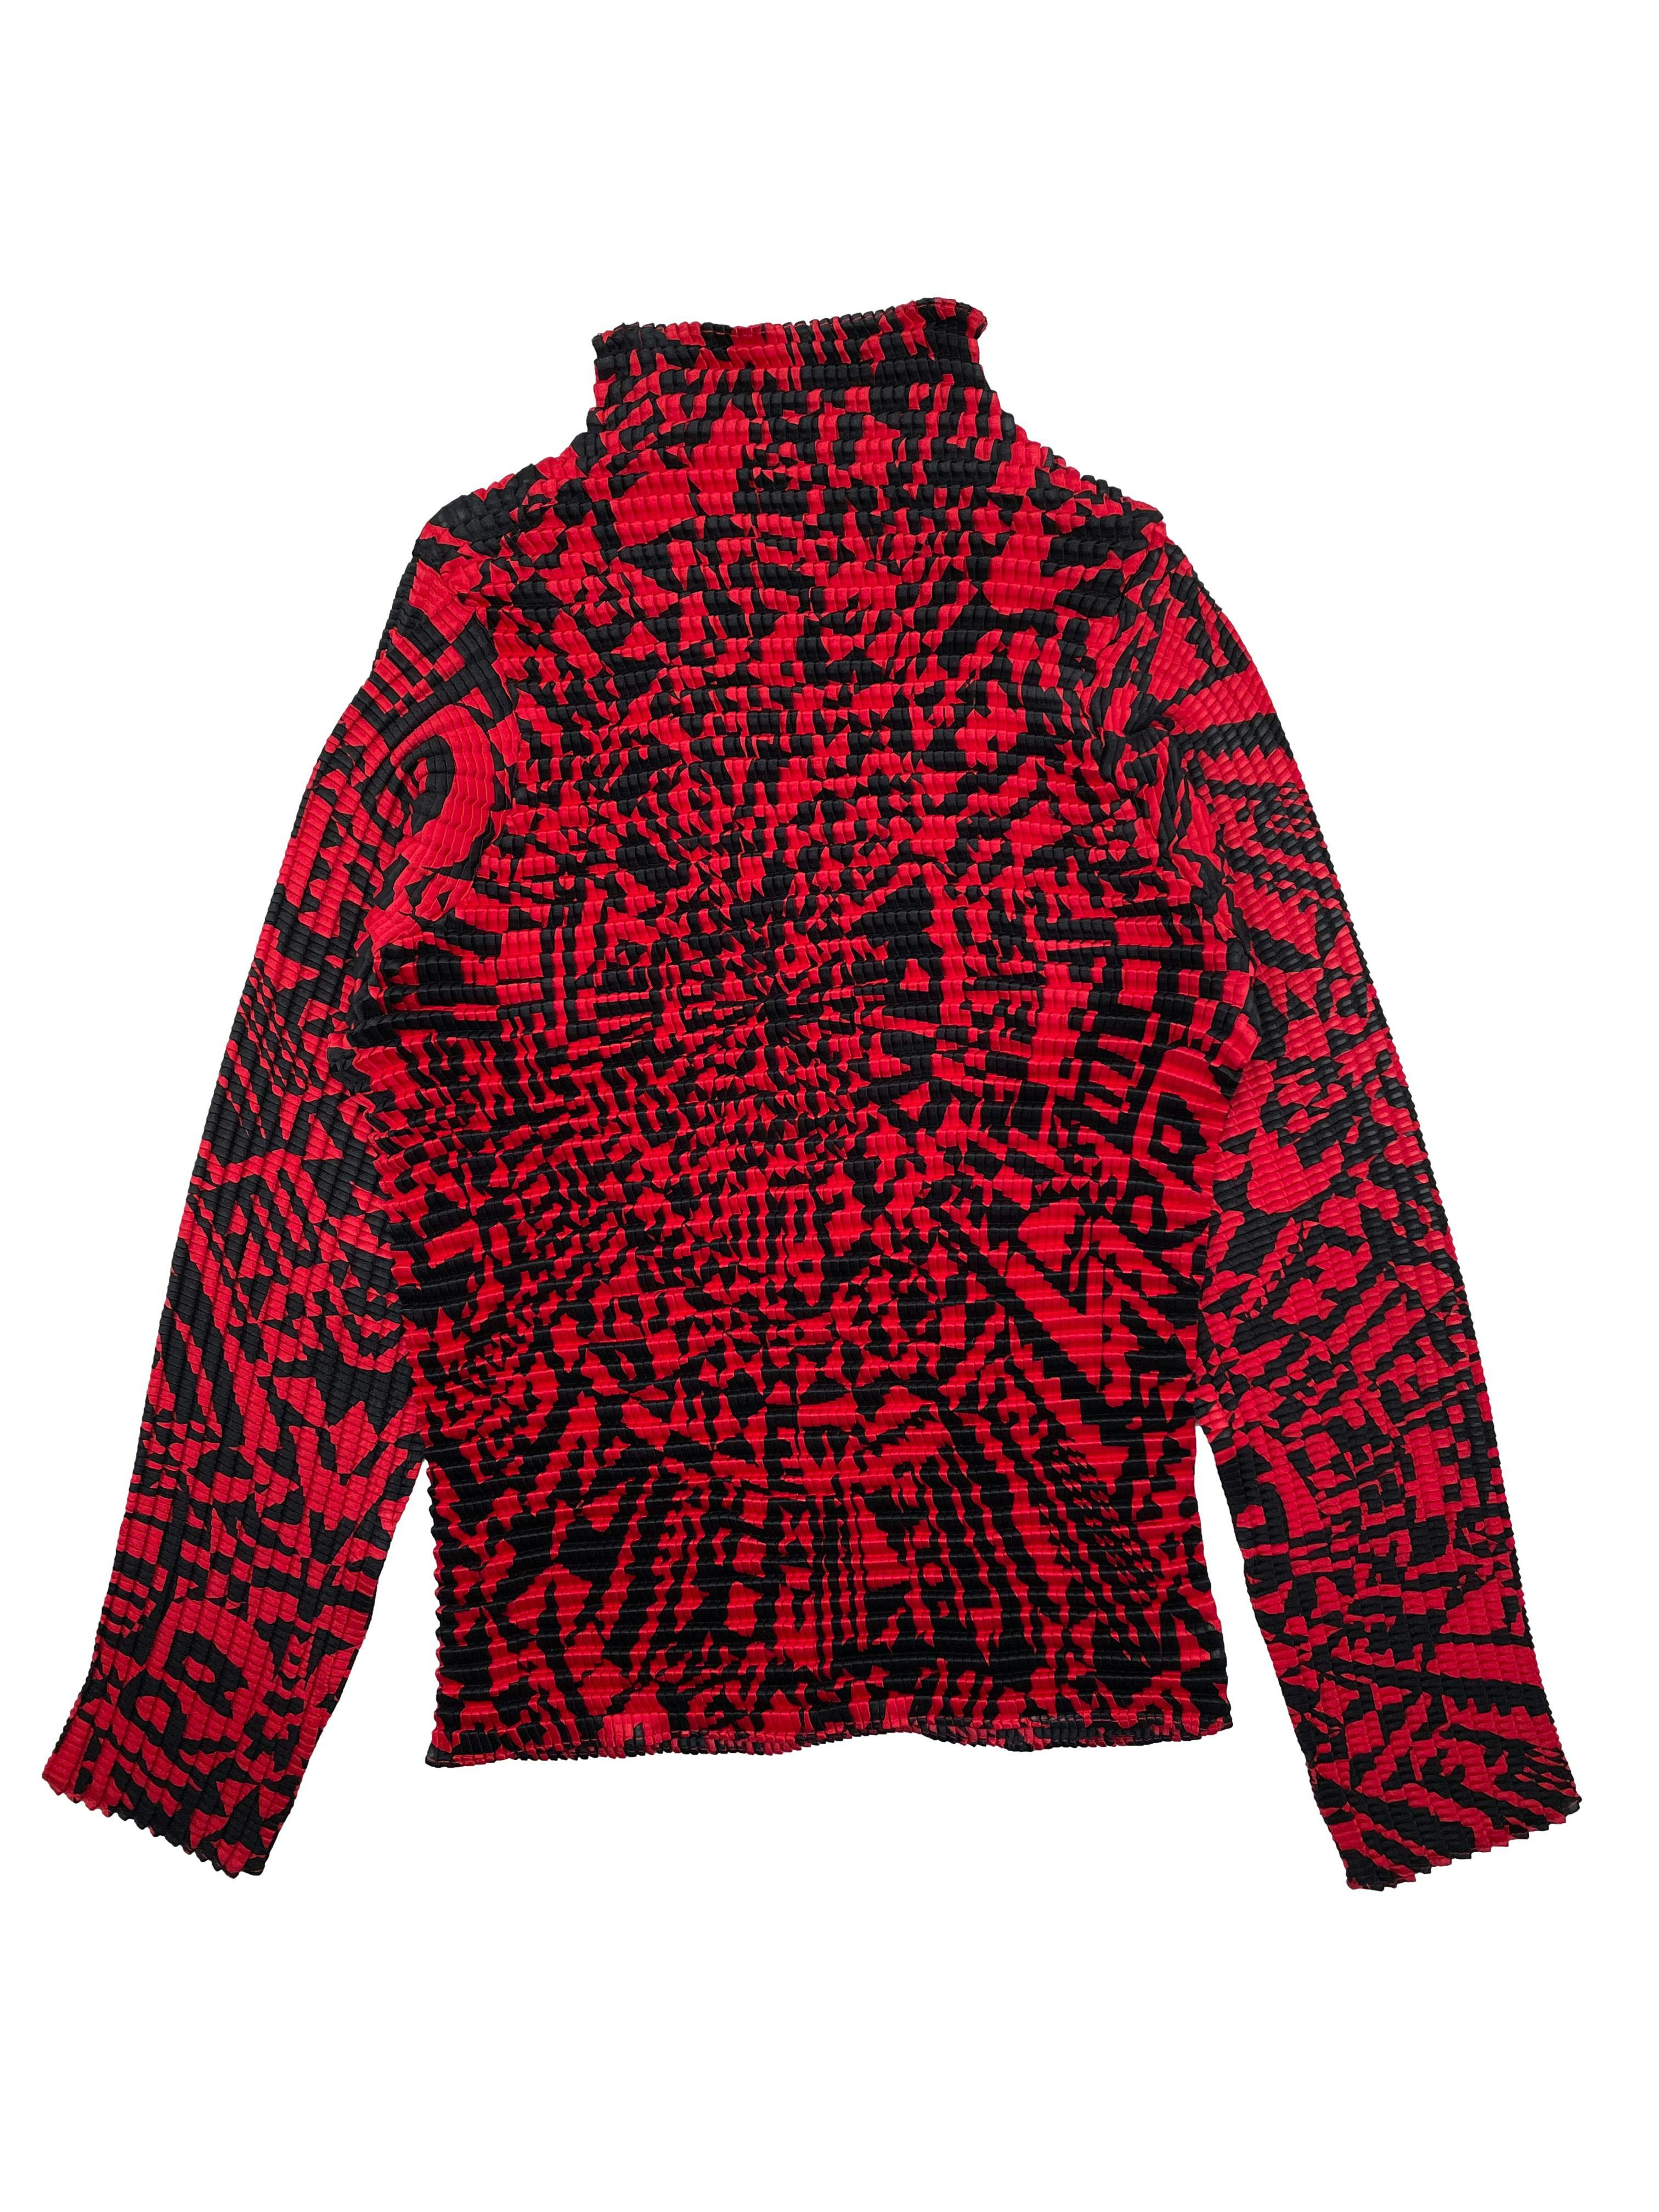 Blusa vintage de tela sedosa roja y negra, técnica plisado que funciona a todas las tallas. Largo 55cm